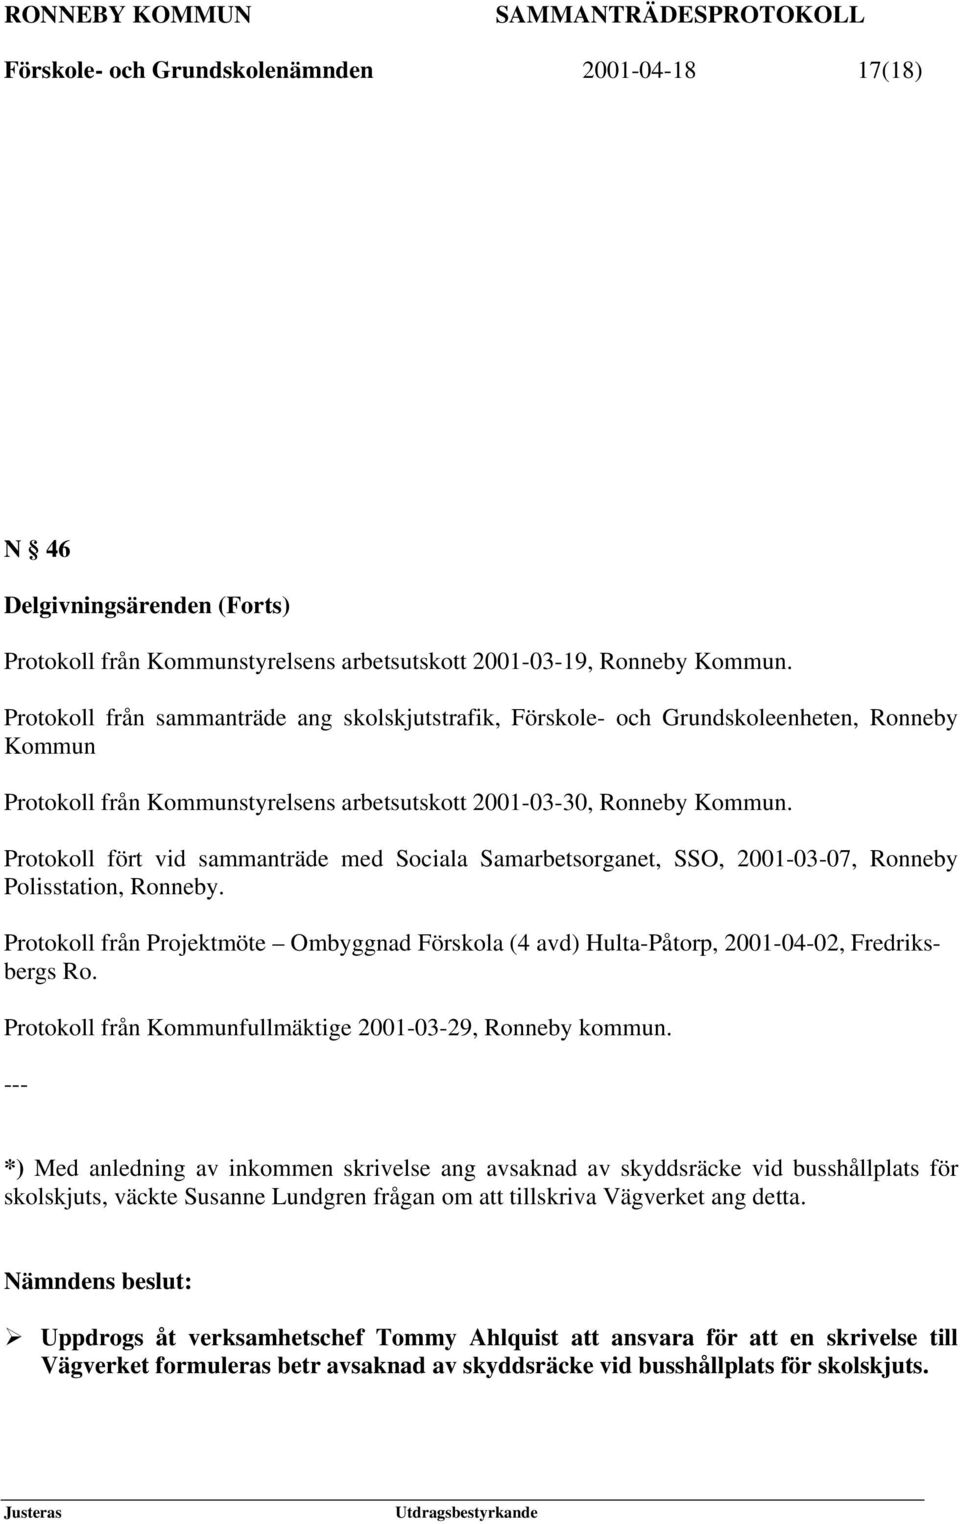 Protokoll fört vid sammanträde med Sociala Samarbetsorganet, SSO, 2001-03-07, Ronneby Polisstation, Ronneby.